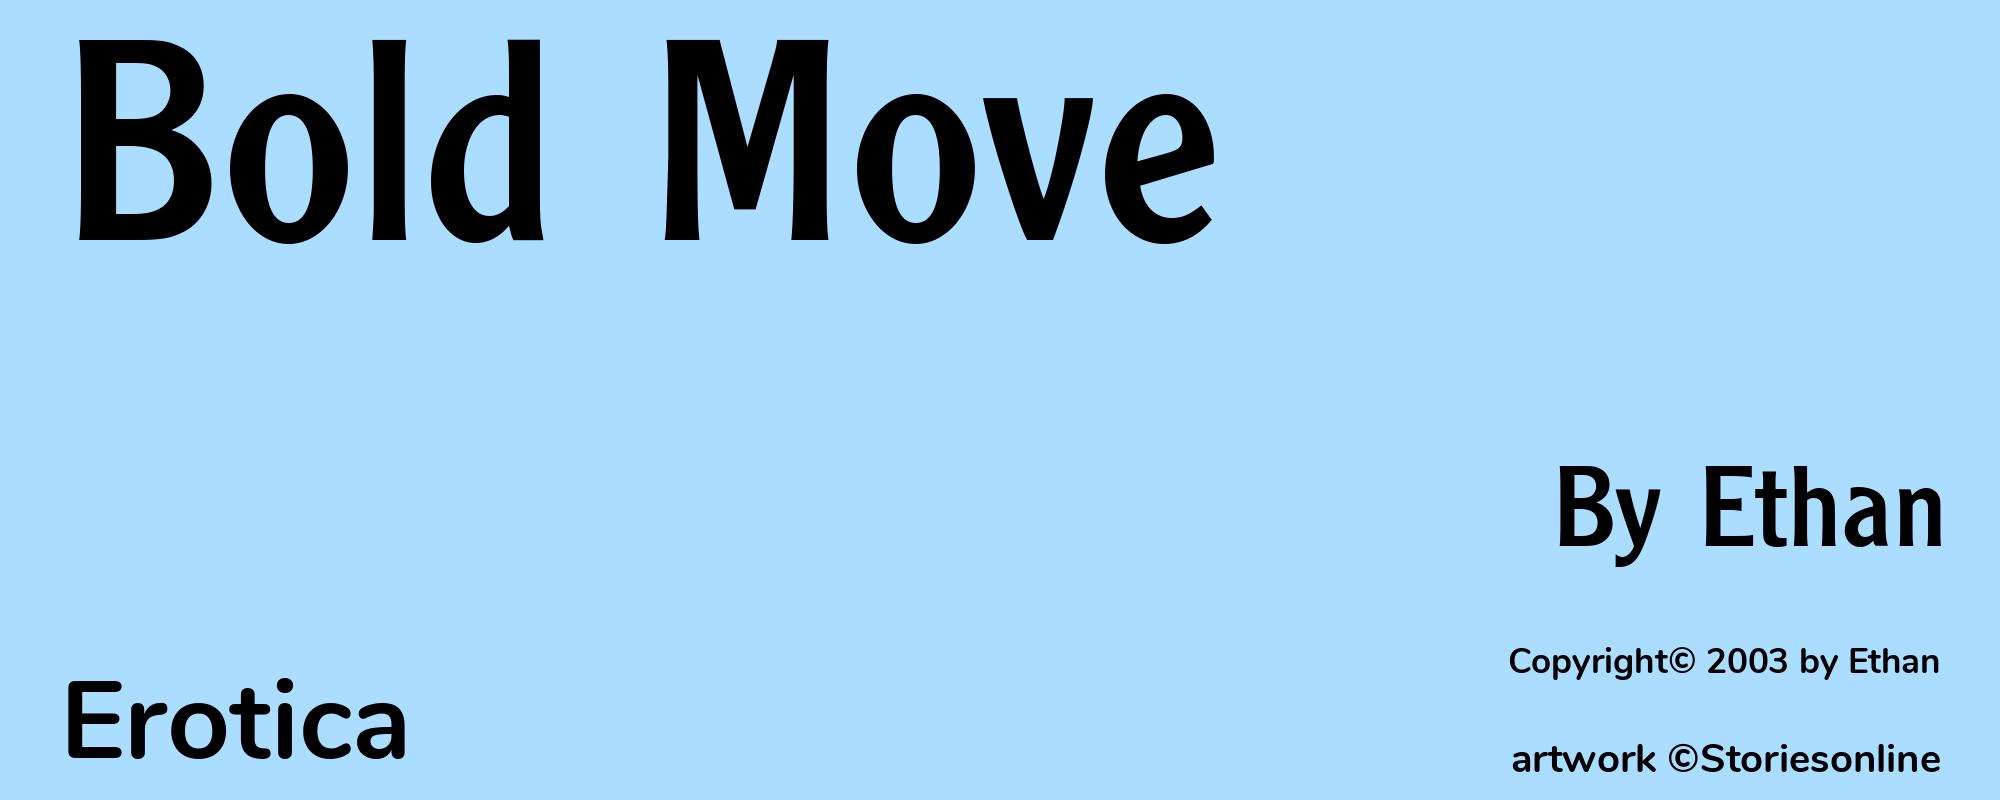 Bold Move - Cover